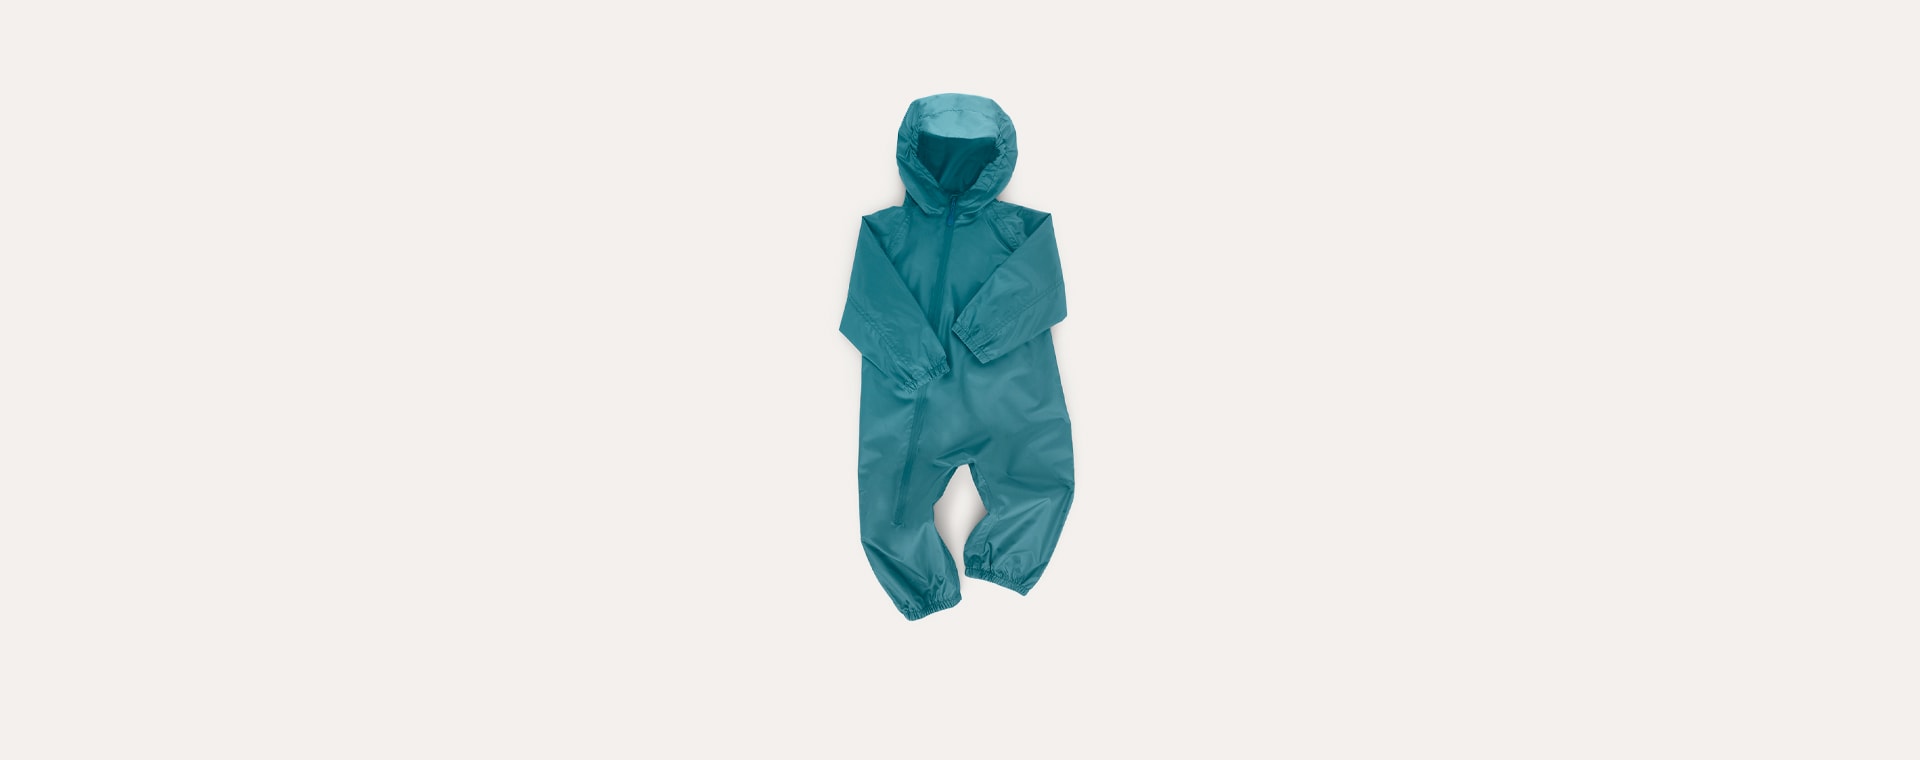 Ocean KIDLY Label Packaway Rain Suit